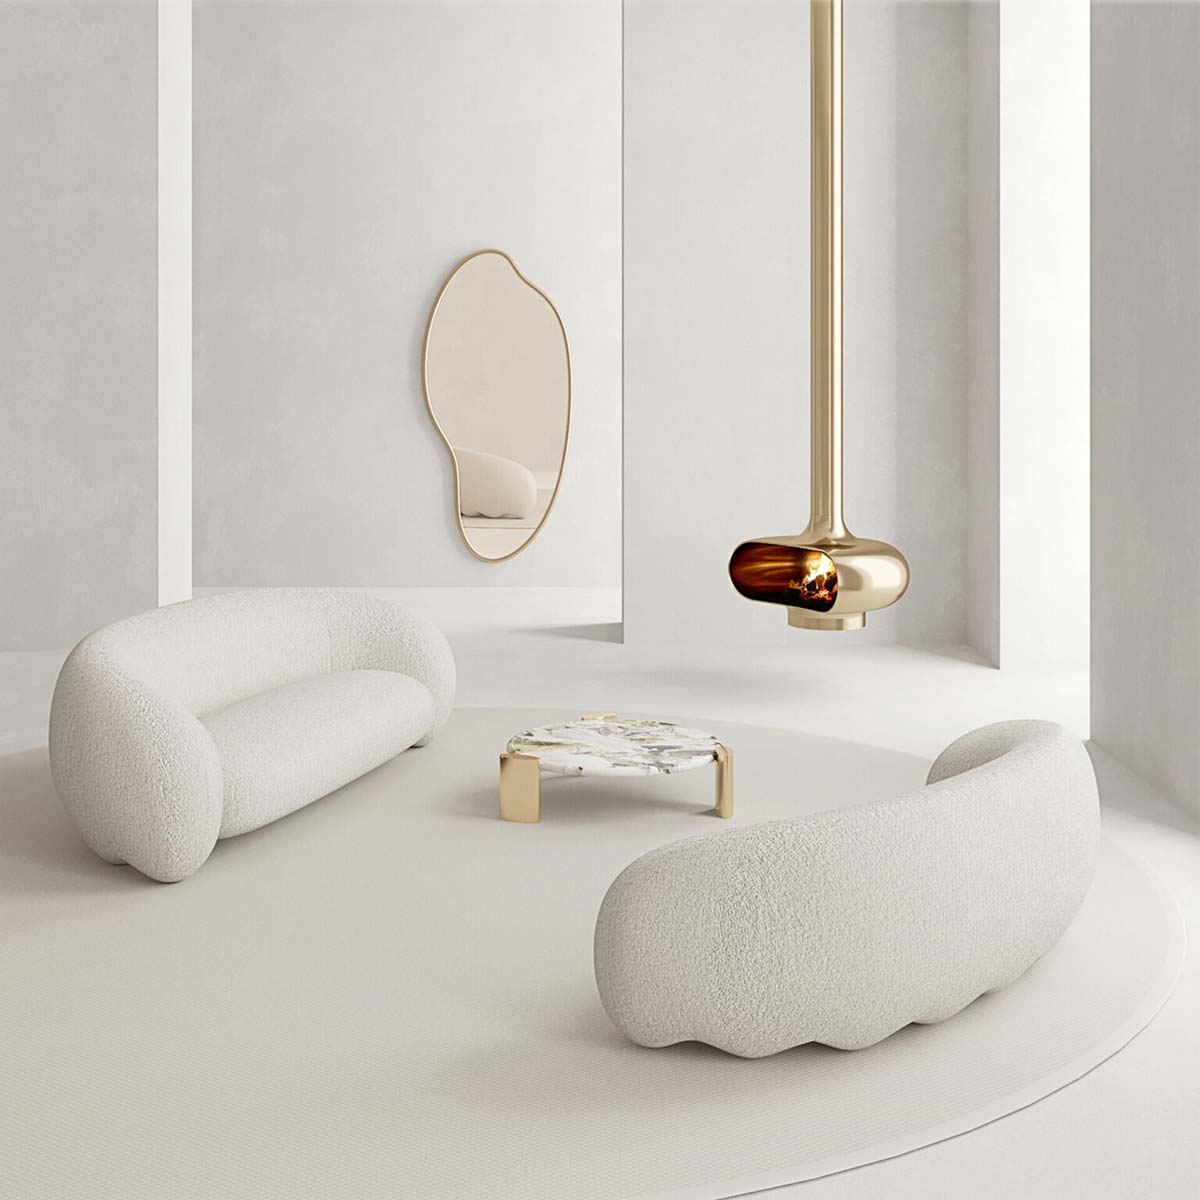 Bordura by Property Furniture, Design Christophe de Sousa & Studio Sa.schi